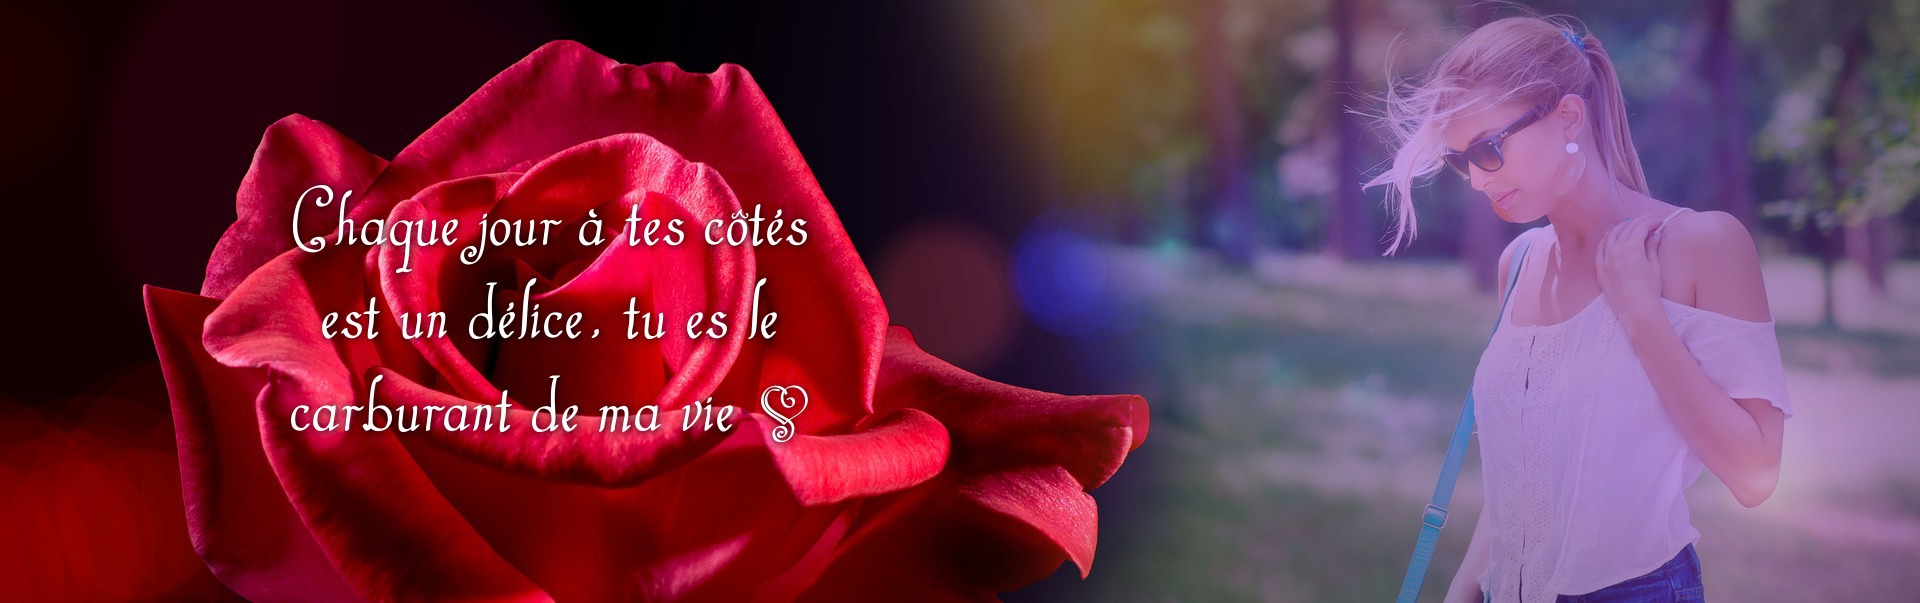 Cvijet crvene ruže sa tekstom i fotografijom Fotomontaža